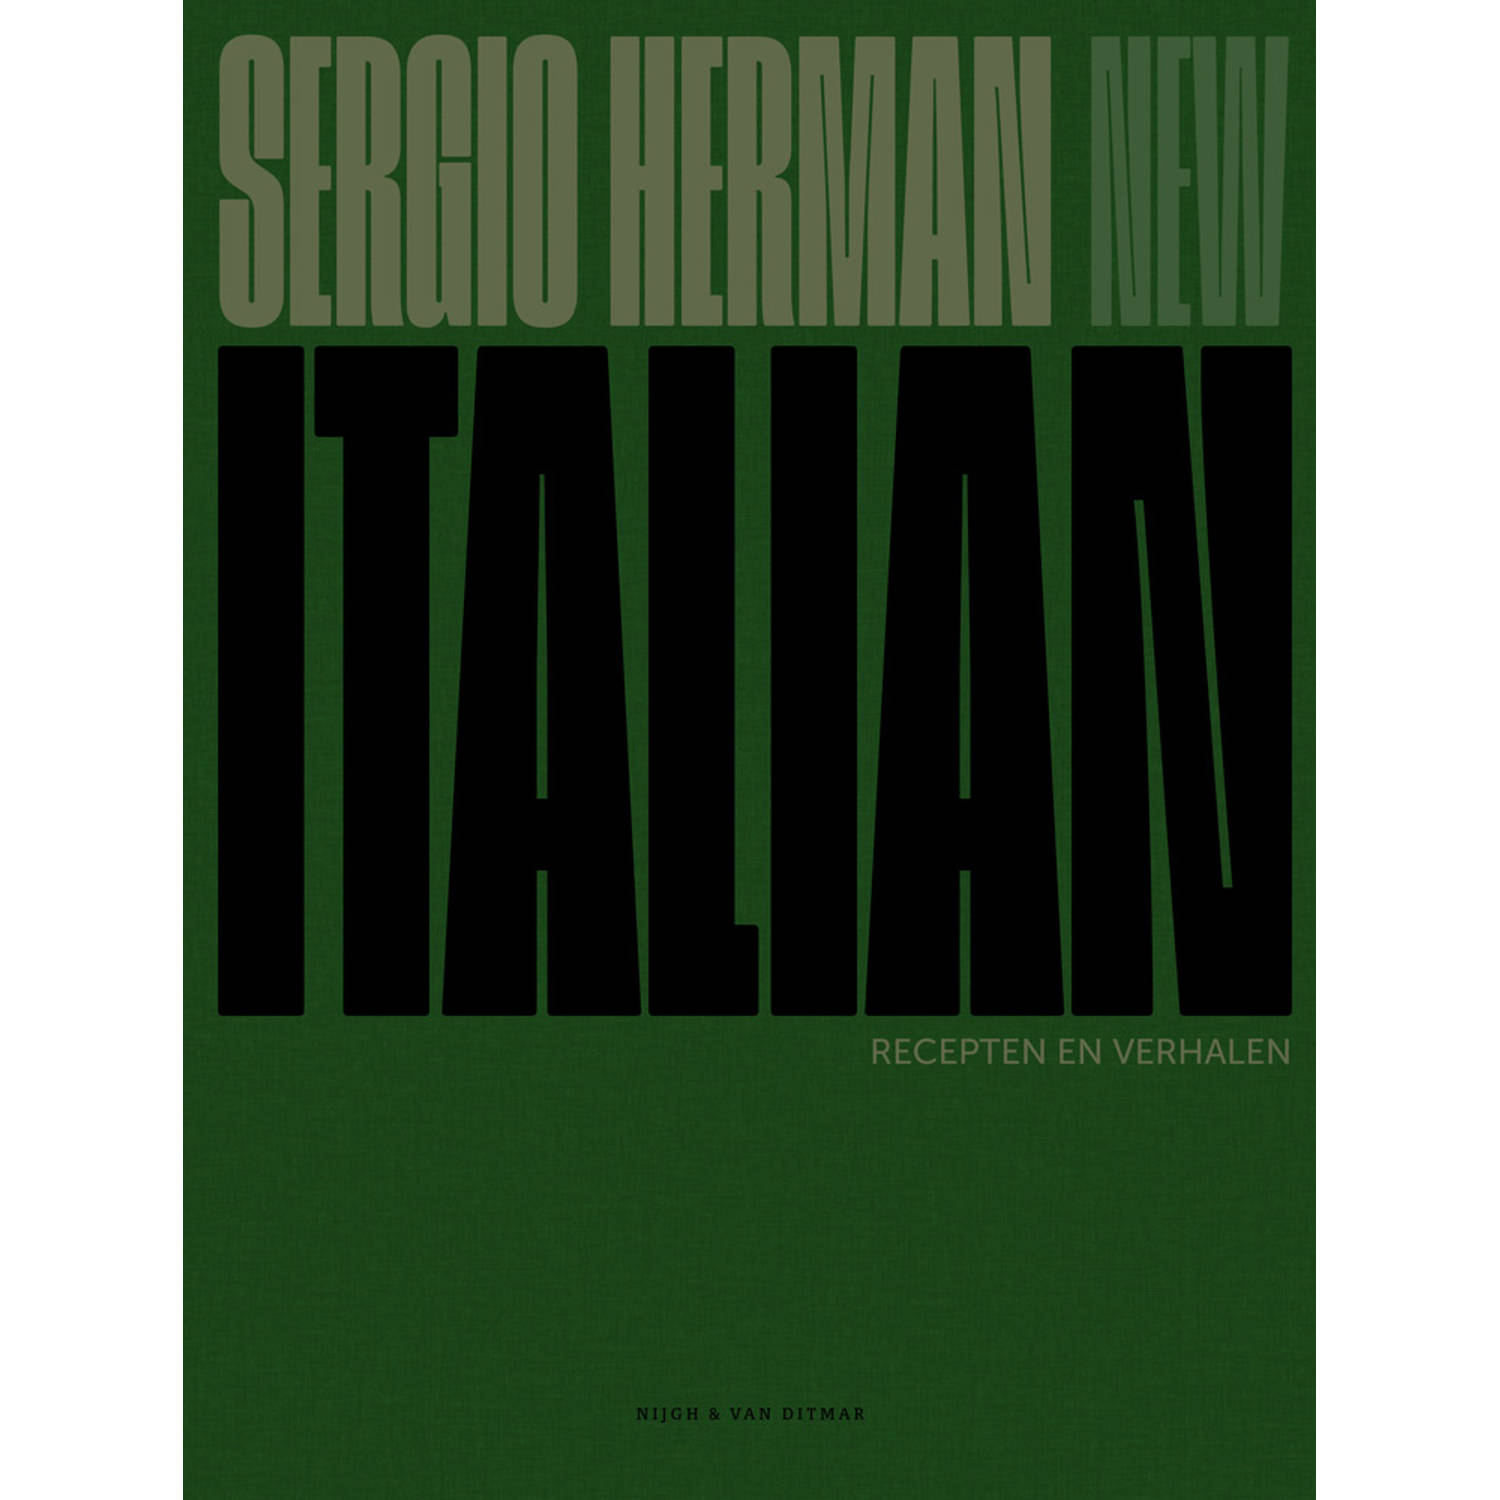 New Italian. Recepten en verhalen, Sergio Herman, Hardcover